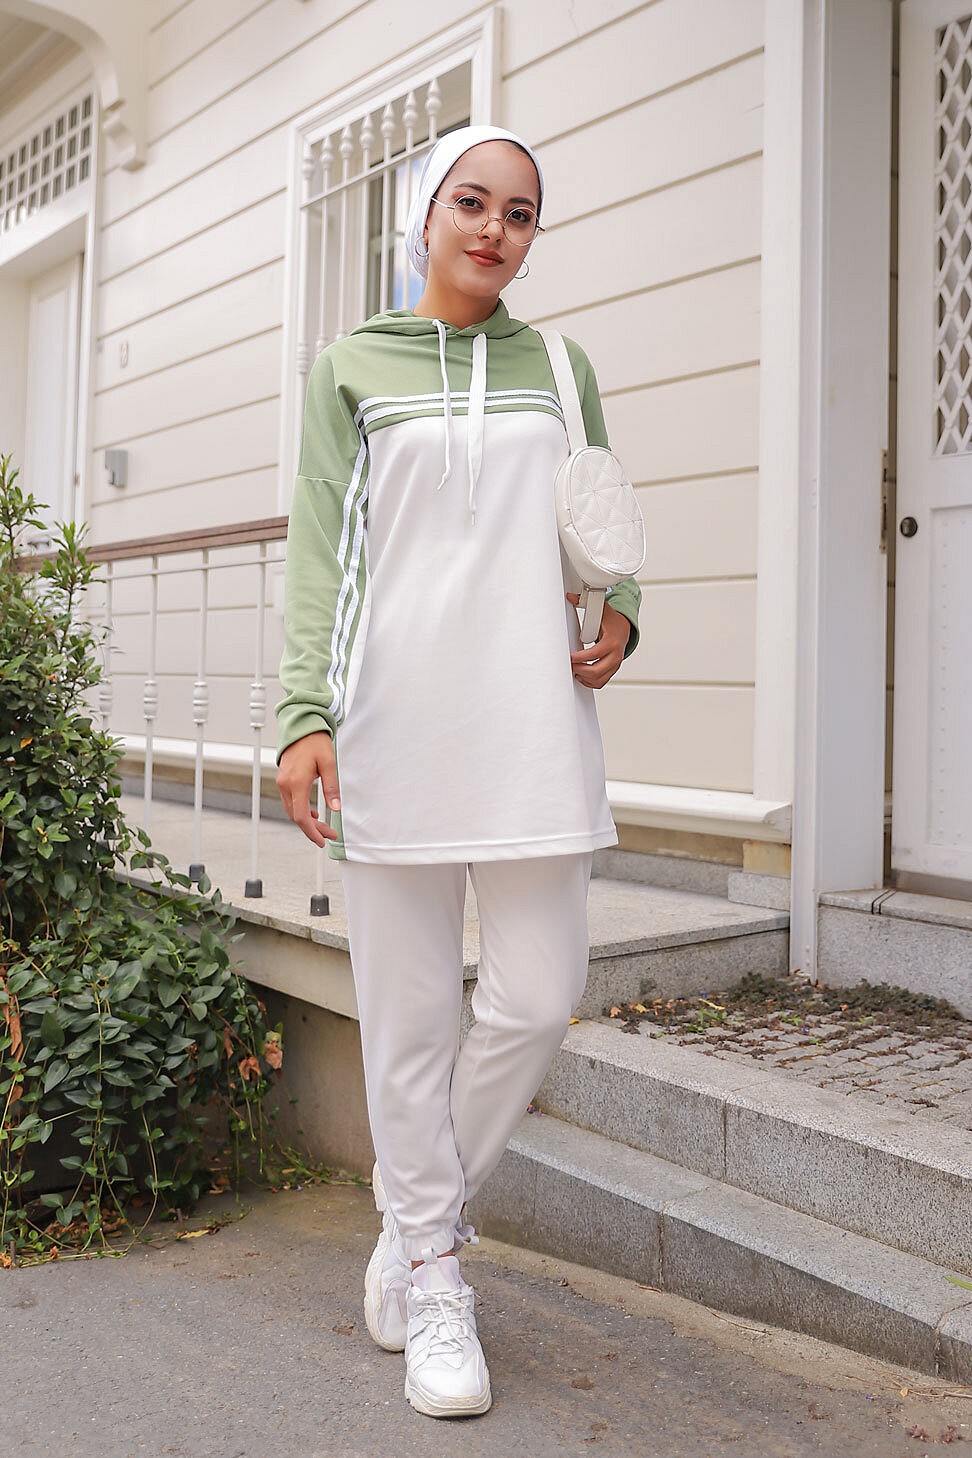 Survêtement femme (Ensemble deux pièces sweet à capuche et pantalon) -  Couleur Blanc et Vert amande - Prêt à porter et accessoires sur